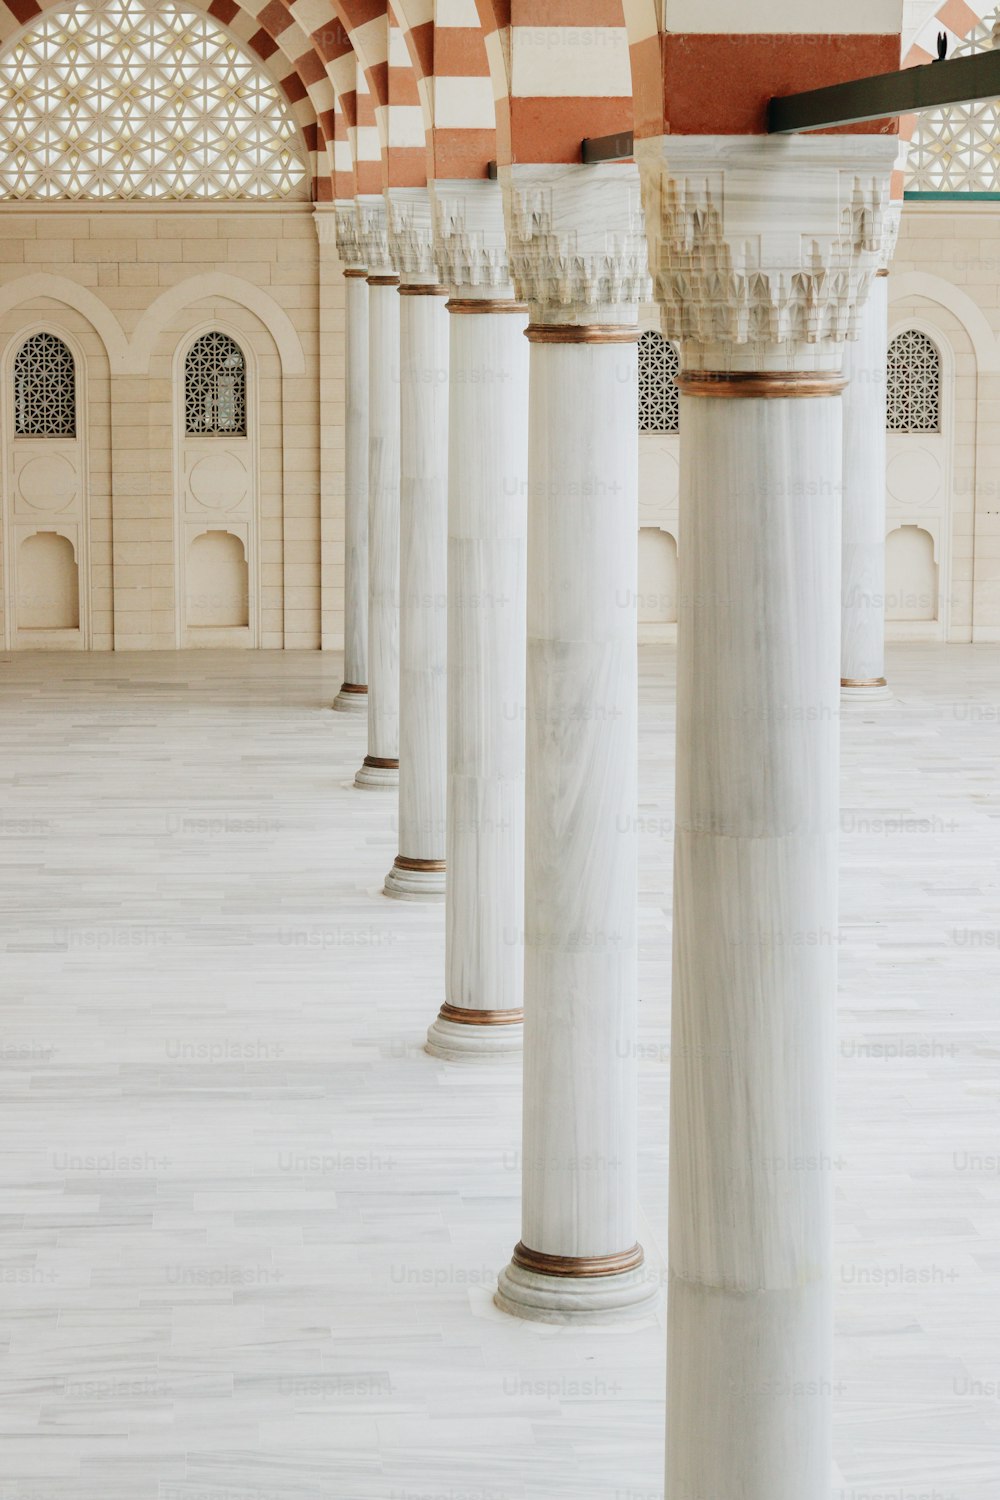 Una hilera de pilares de mármol blanco en un edificio